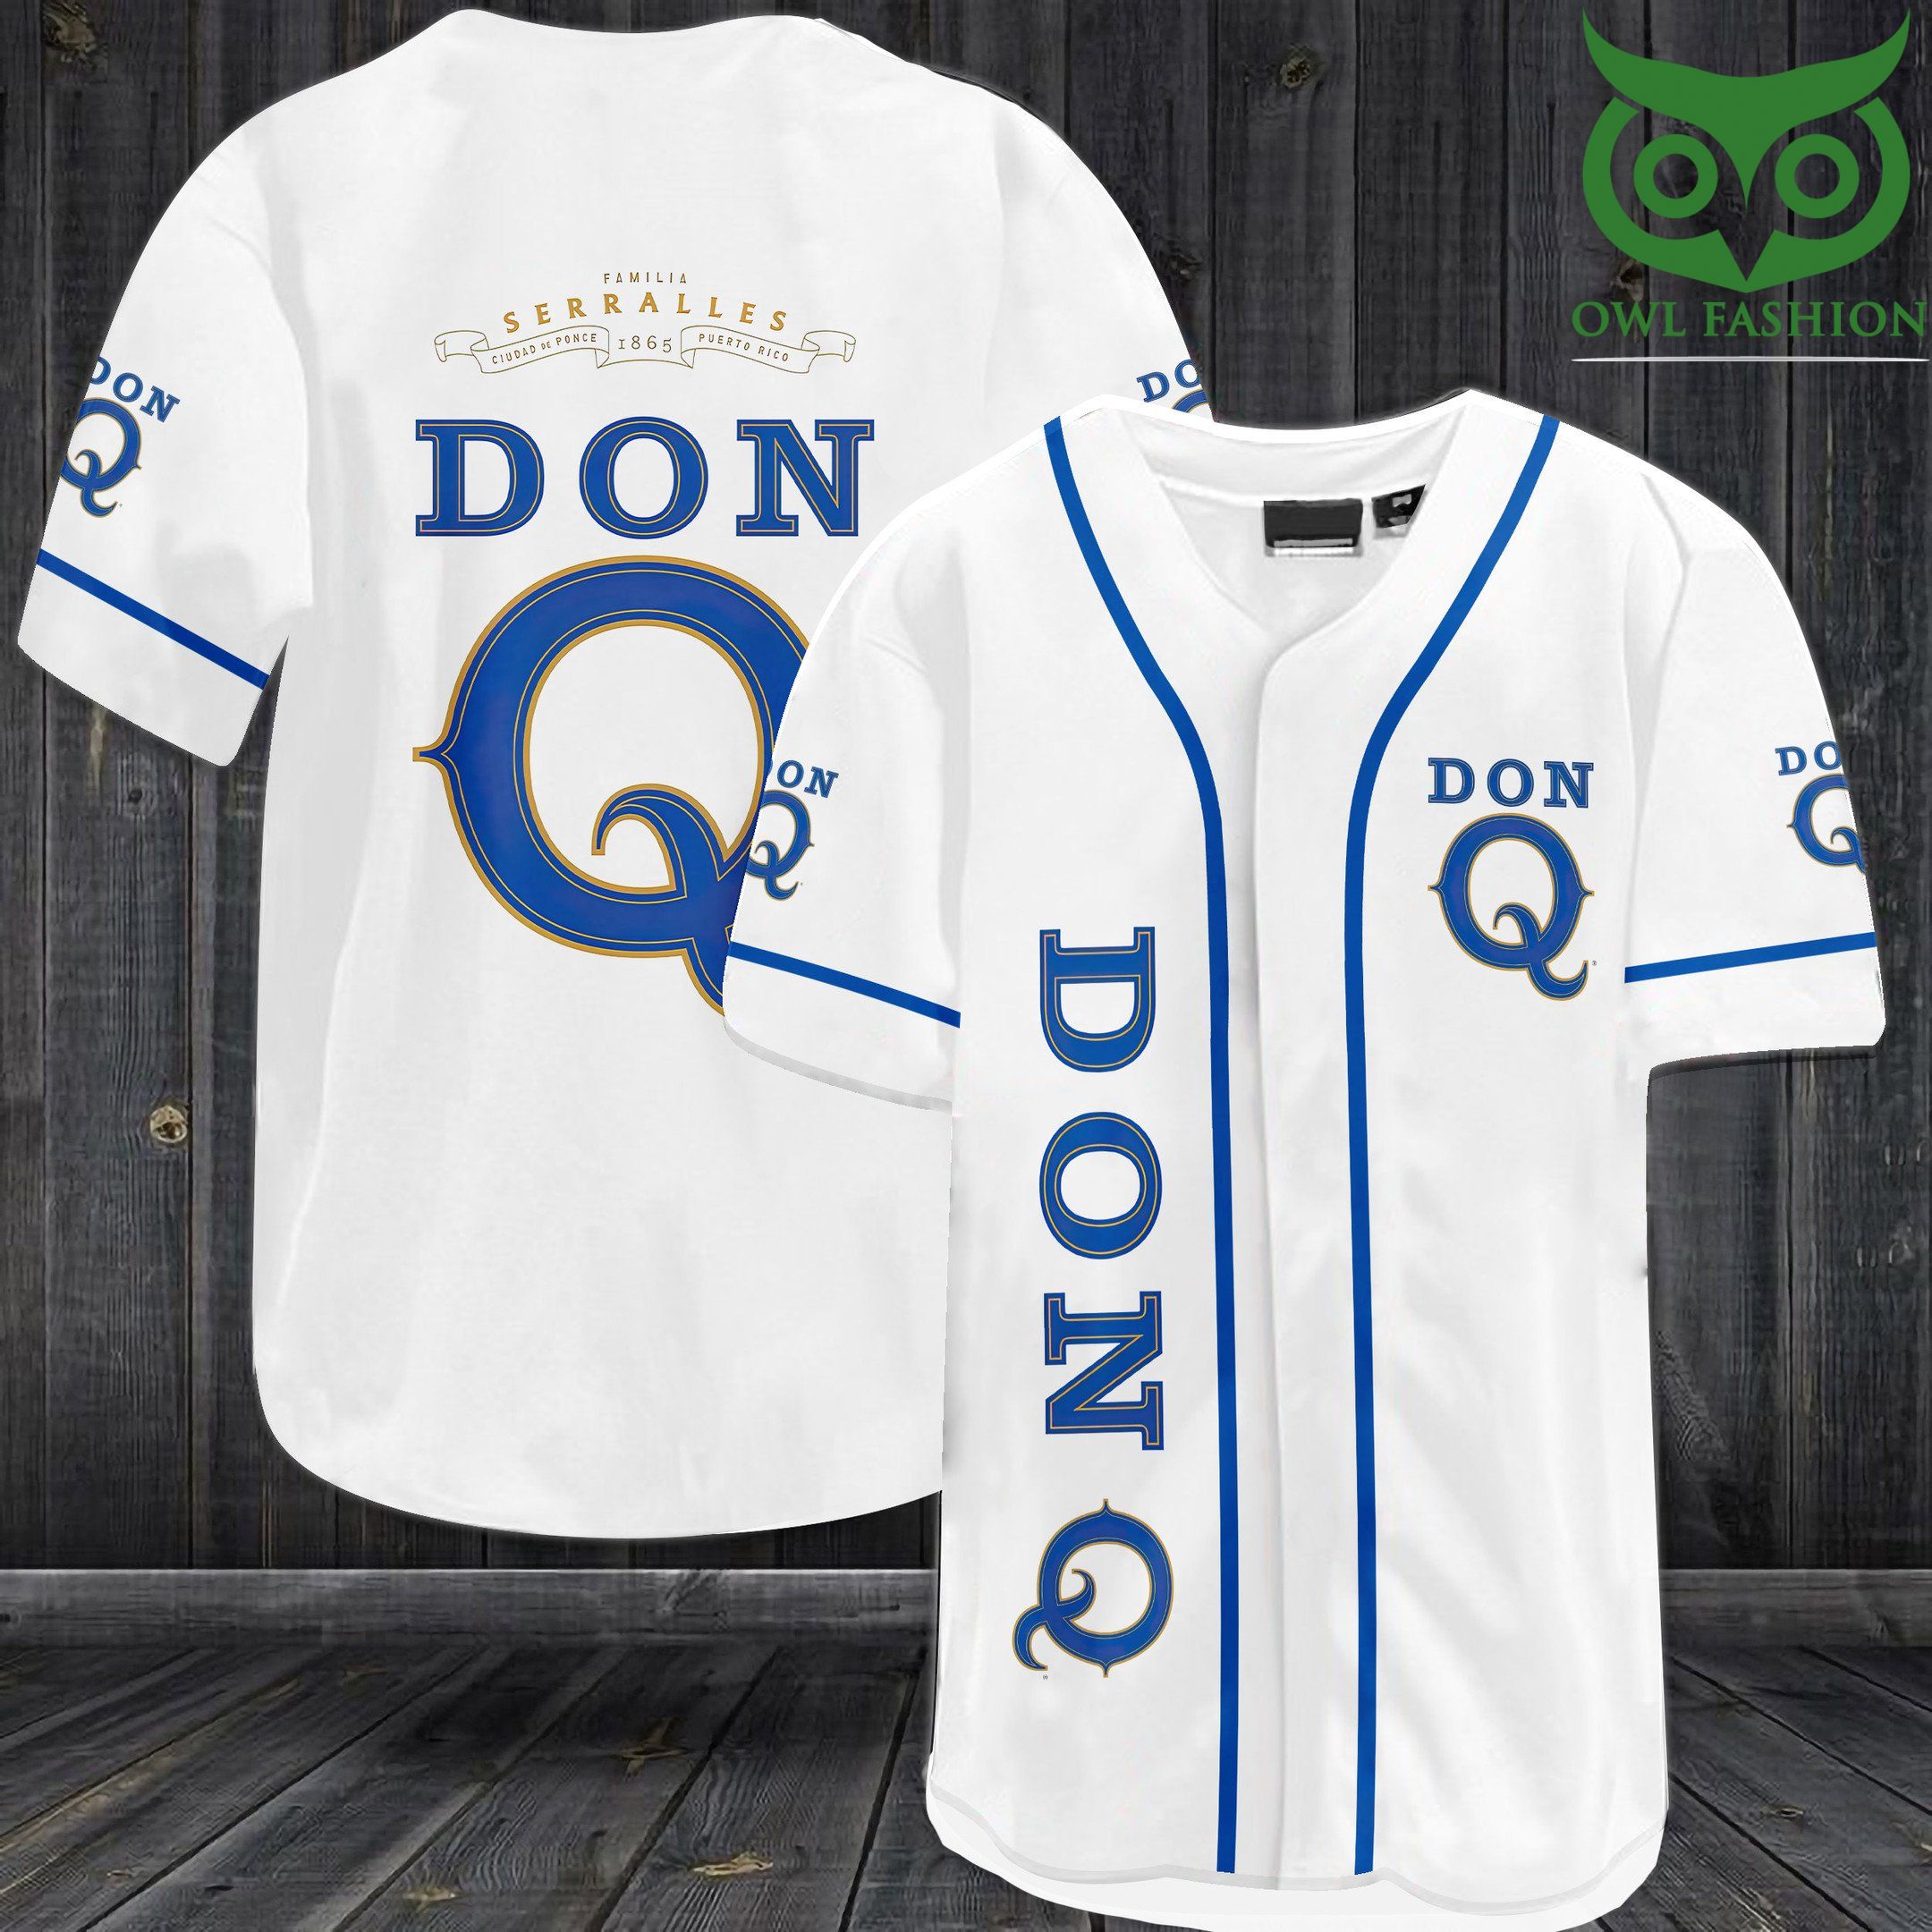 4 Don Q Seralles Baseball Jersey Shirt